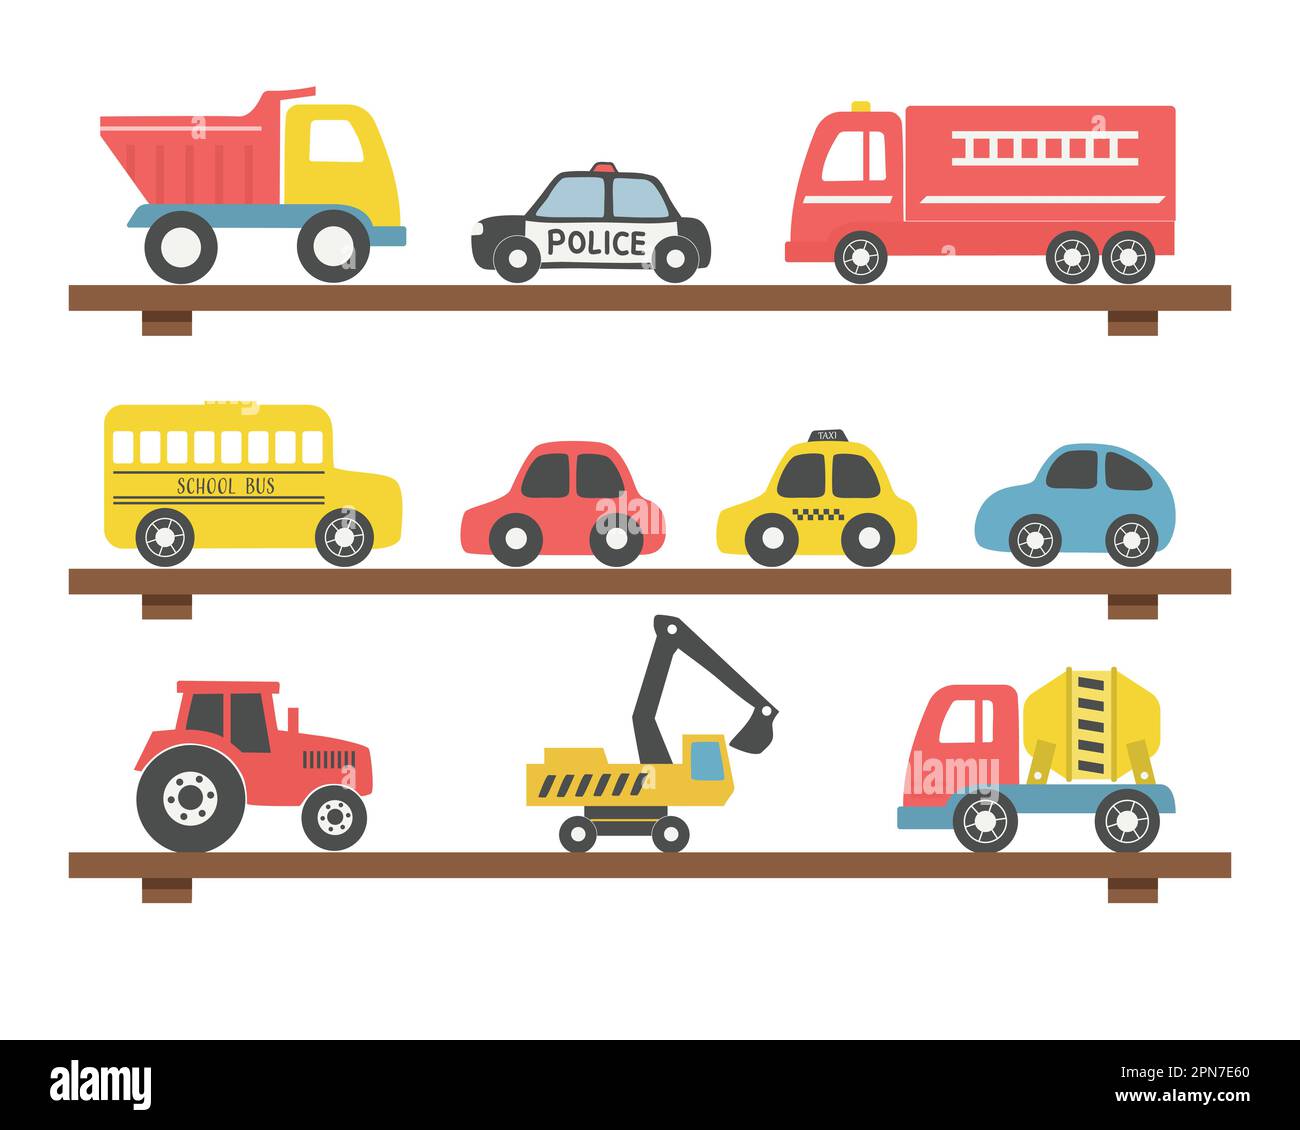 Spielzeug auf den Regalen. Es gibt verschiedene Spielzeugautos: Feuerwehrwagen, Lkw, Polizeiwagen, Taxi, Bus, Bagger, Betonmischwagen, Traktor. Spielzeug für Stock Vektor